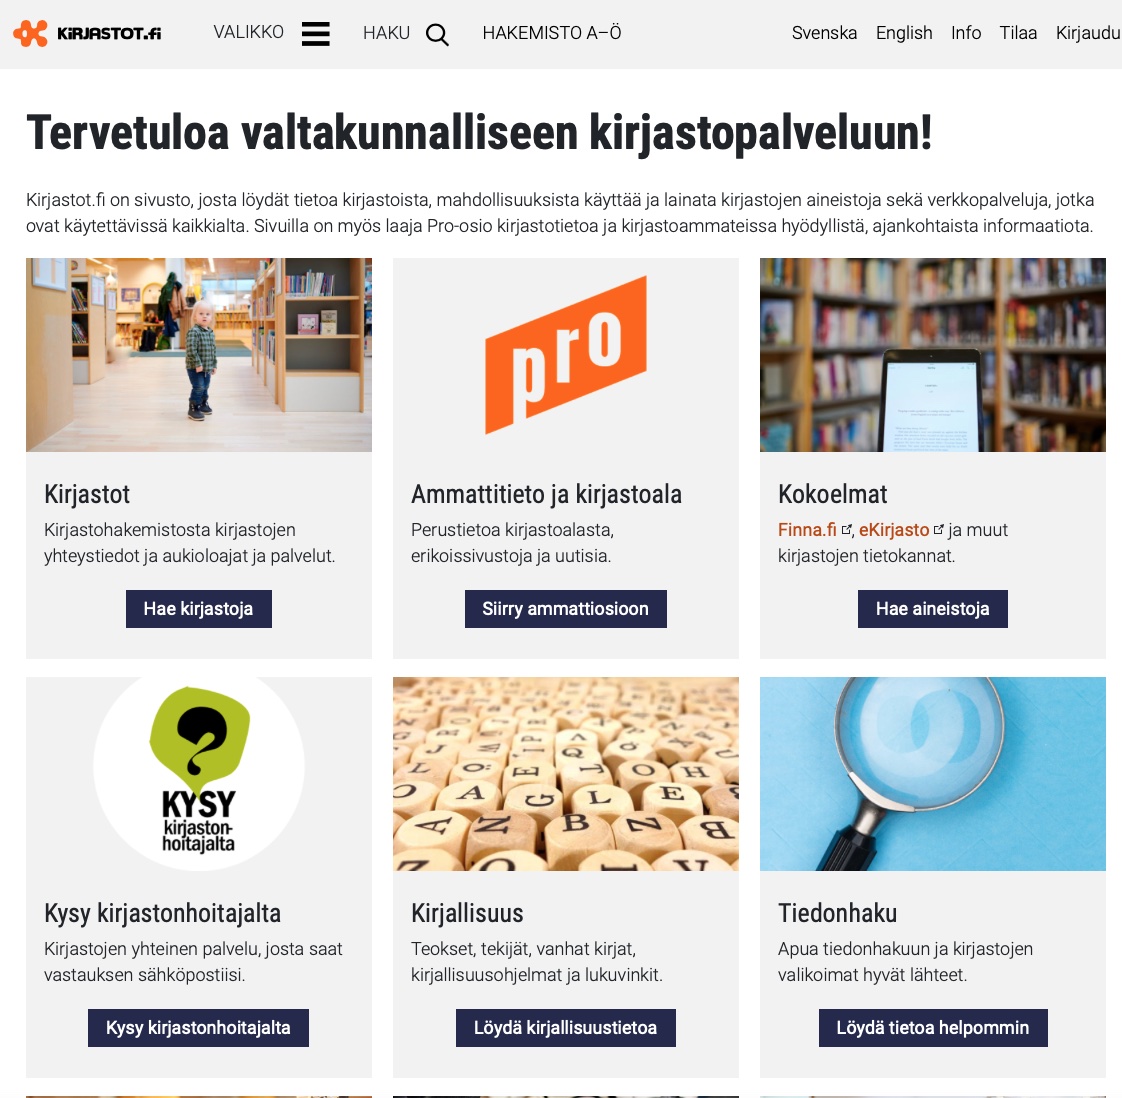 Kirjastot.fi:n aloitussivulla näkyvät kaikille tarkoitetut palvelut sekä ammattilaisosioon käynti.